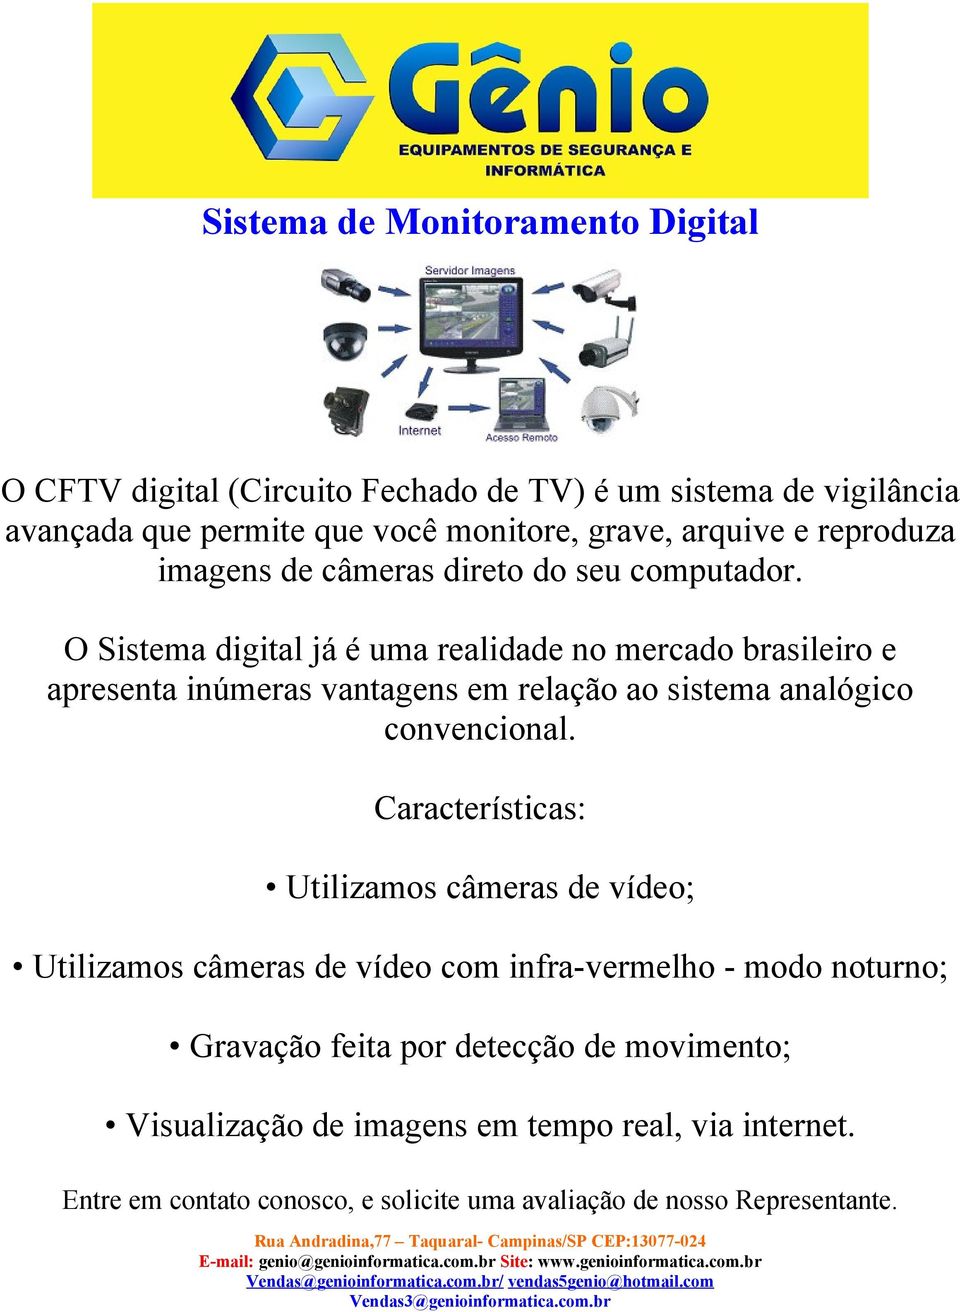 O Sistema digital já é uma realidade no mercado brasileiro e apresenta inúmeras vantagens em relação ao sistema analógico convencional.